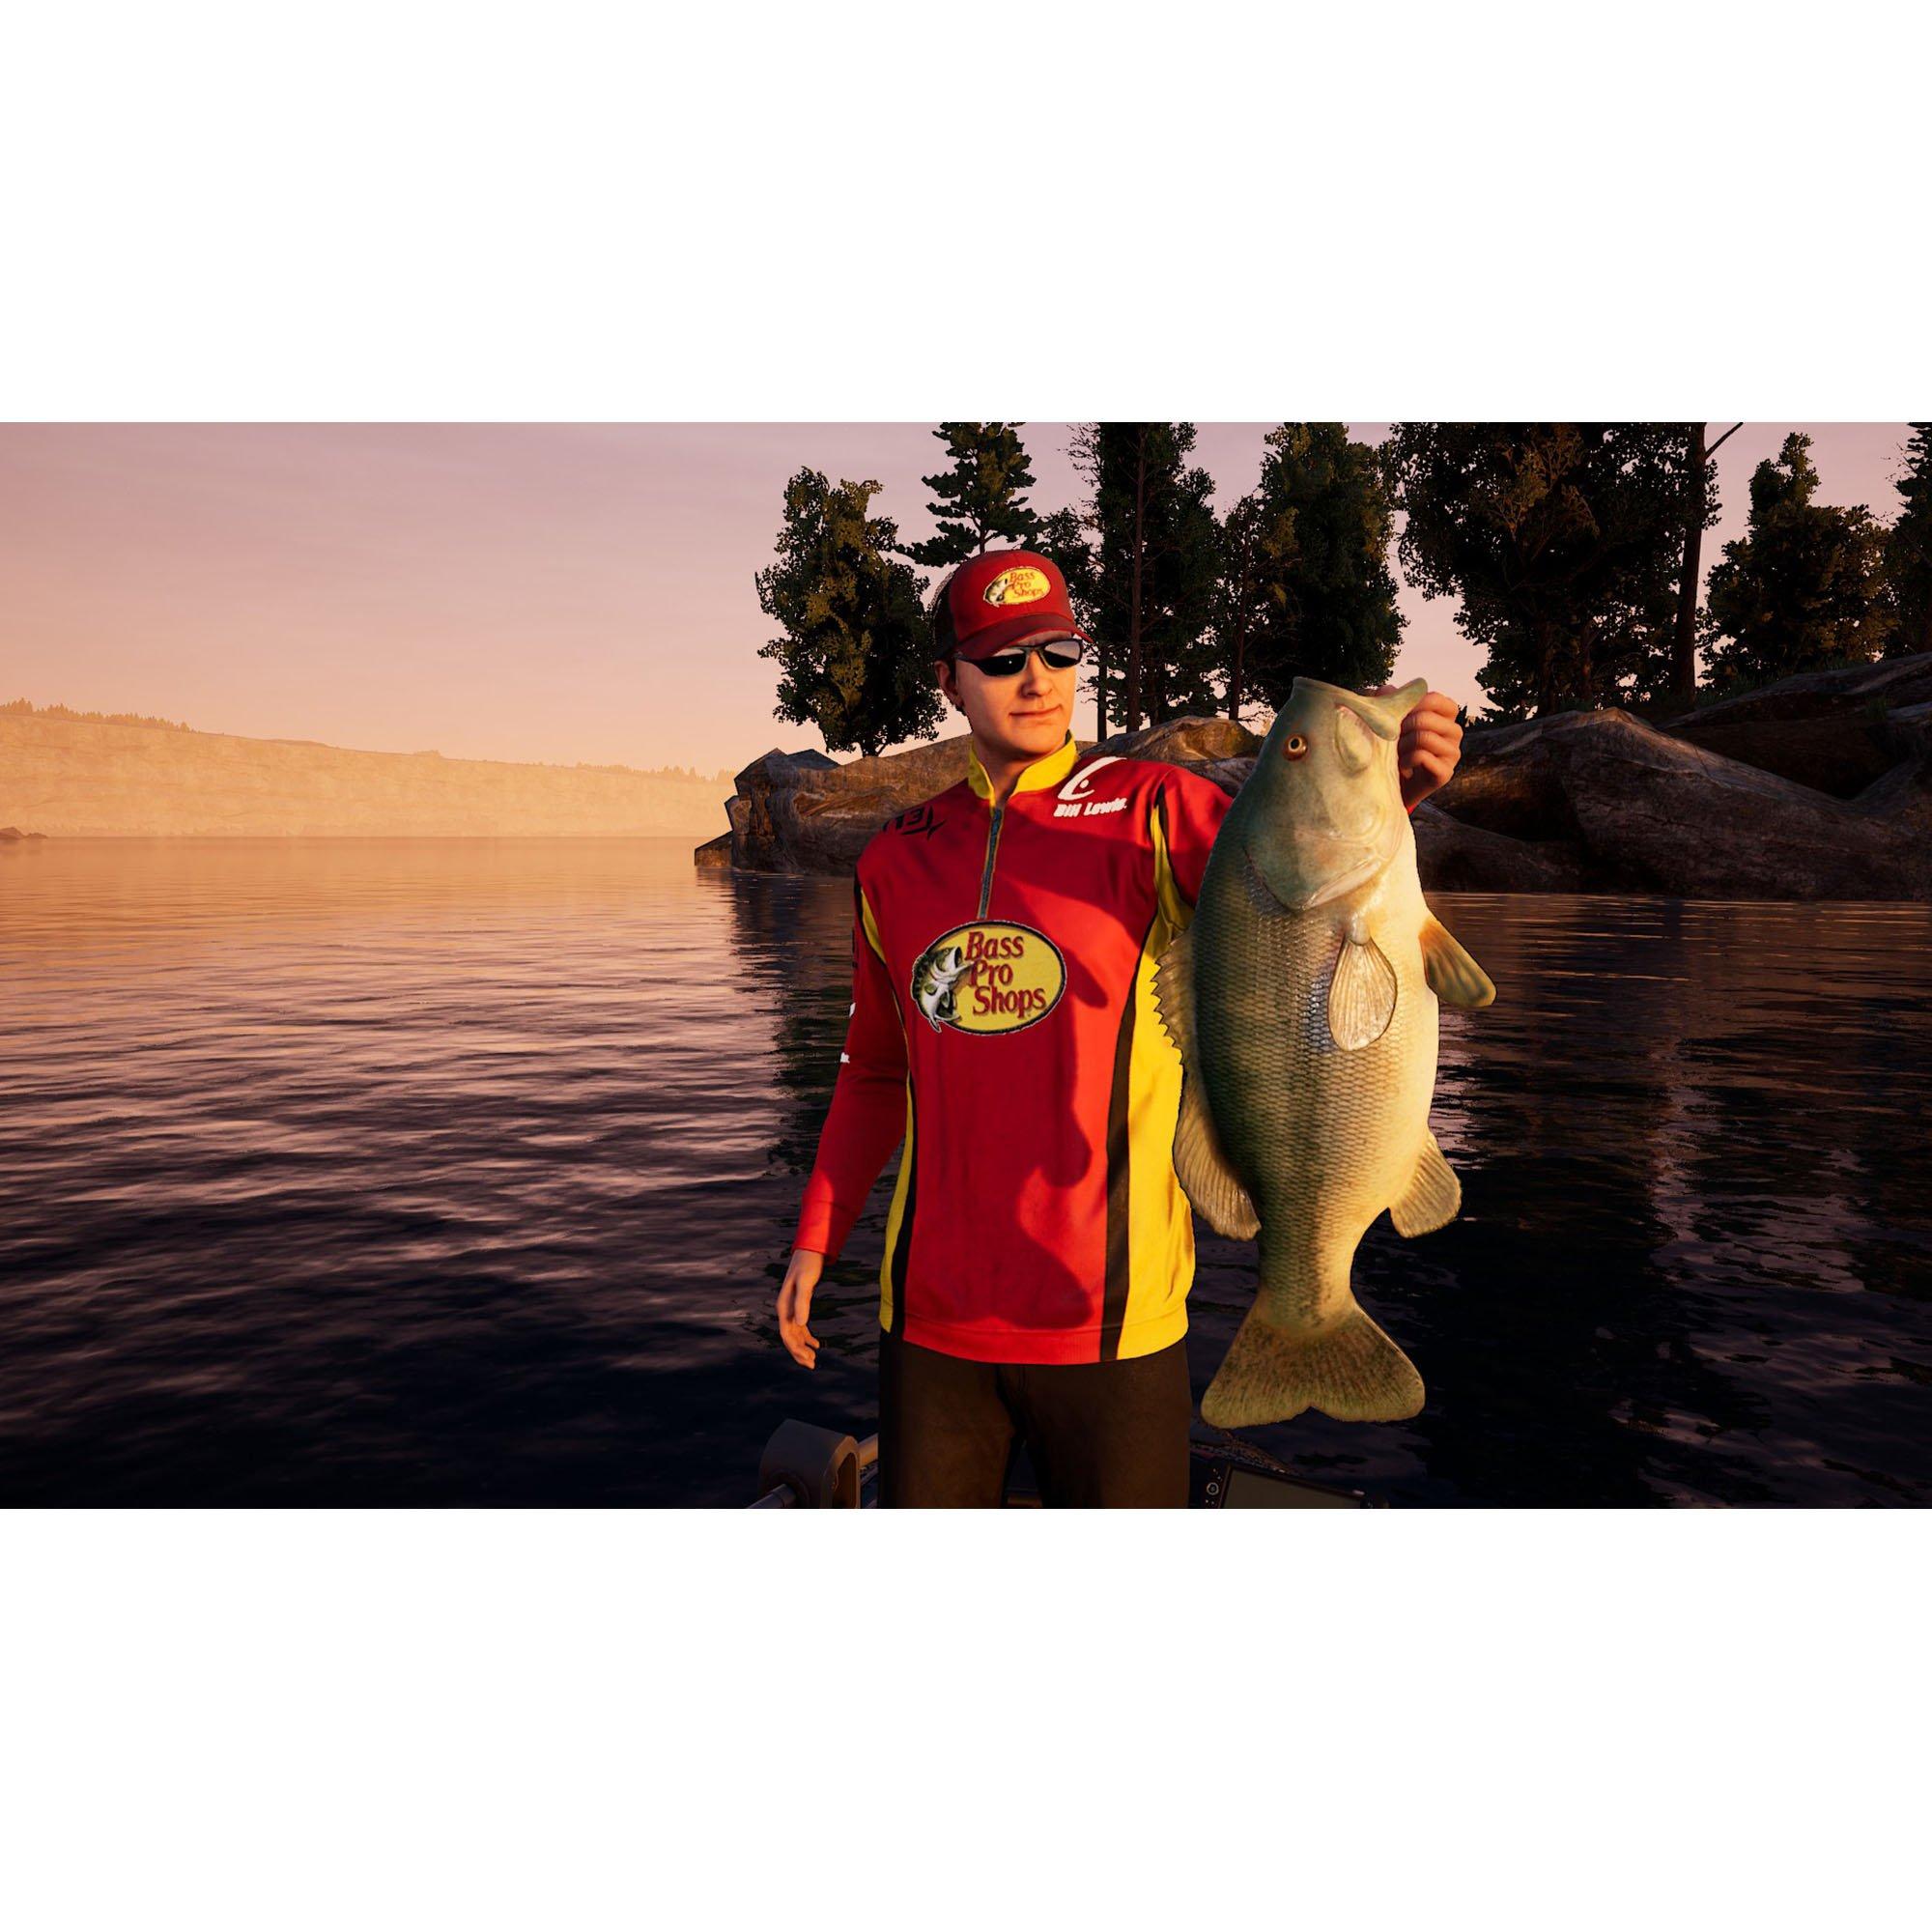 Bass Pro Shops Fishing Sim World - PlayStation 4